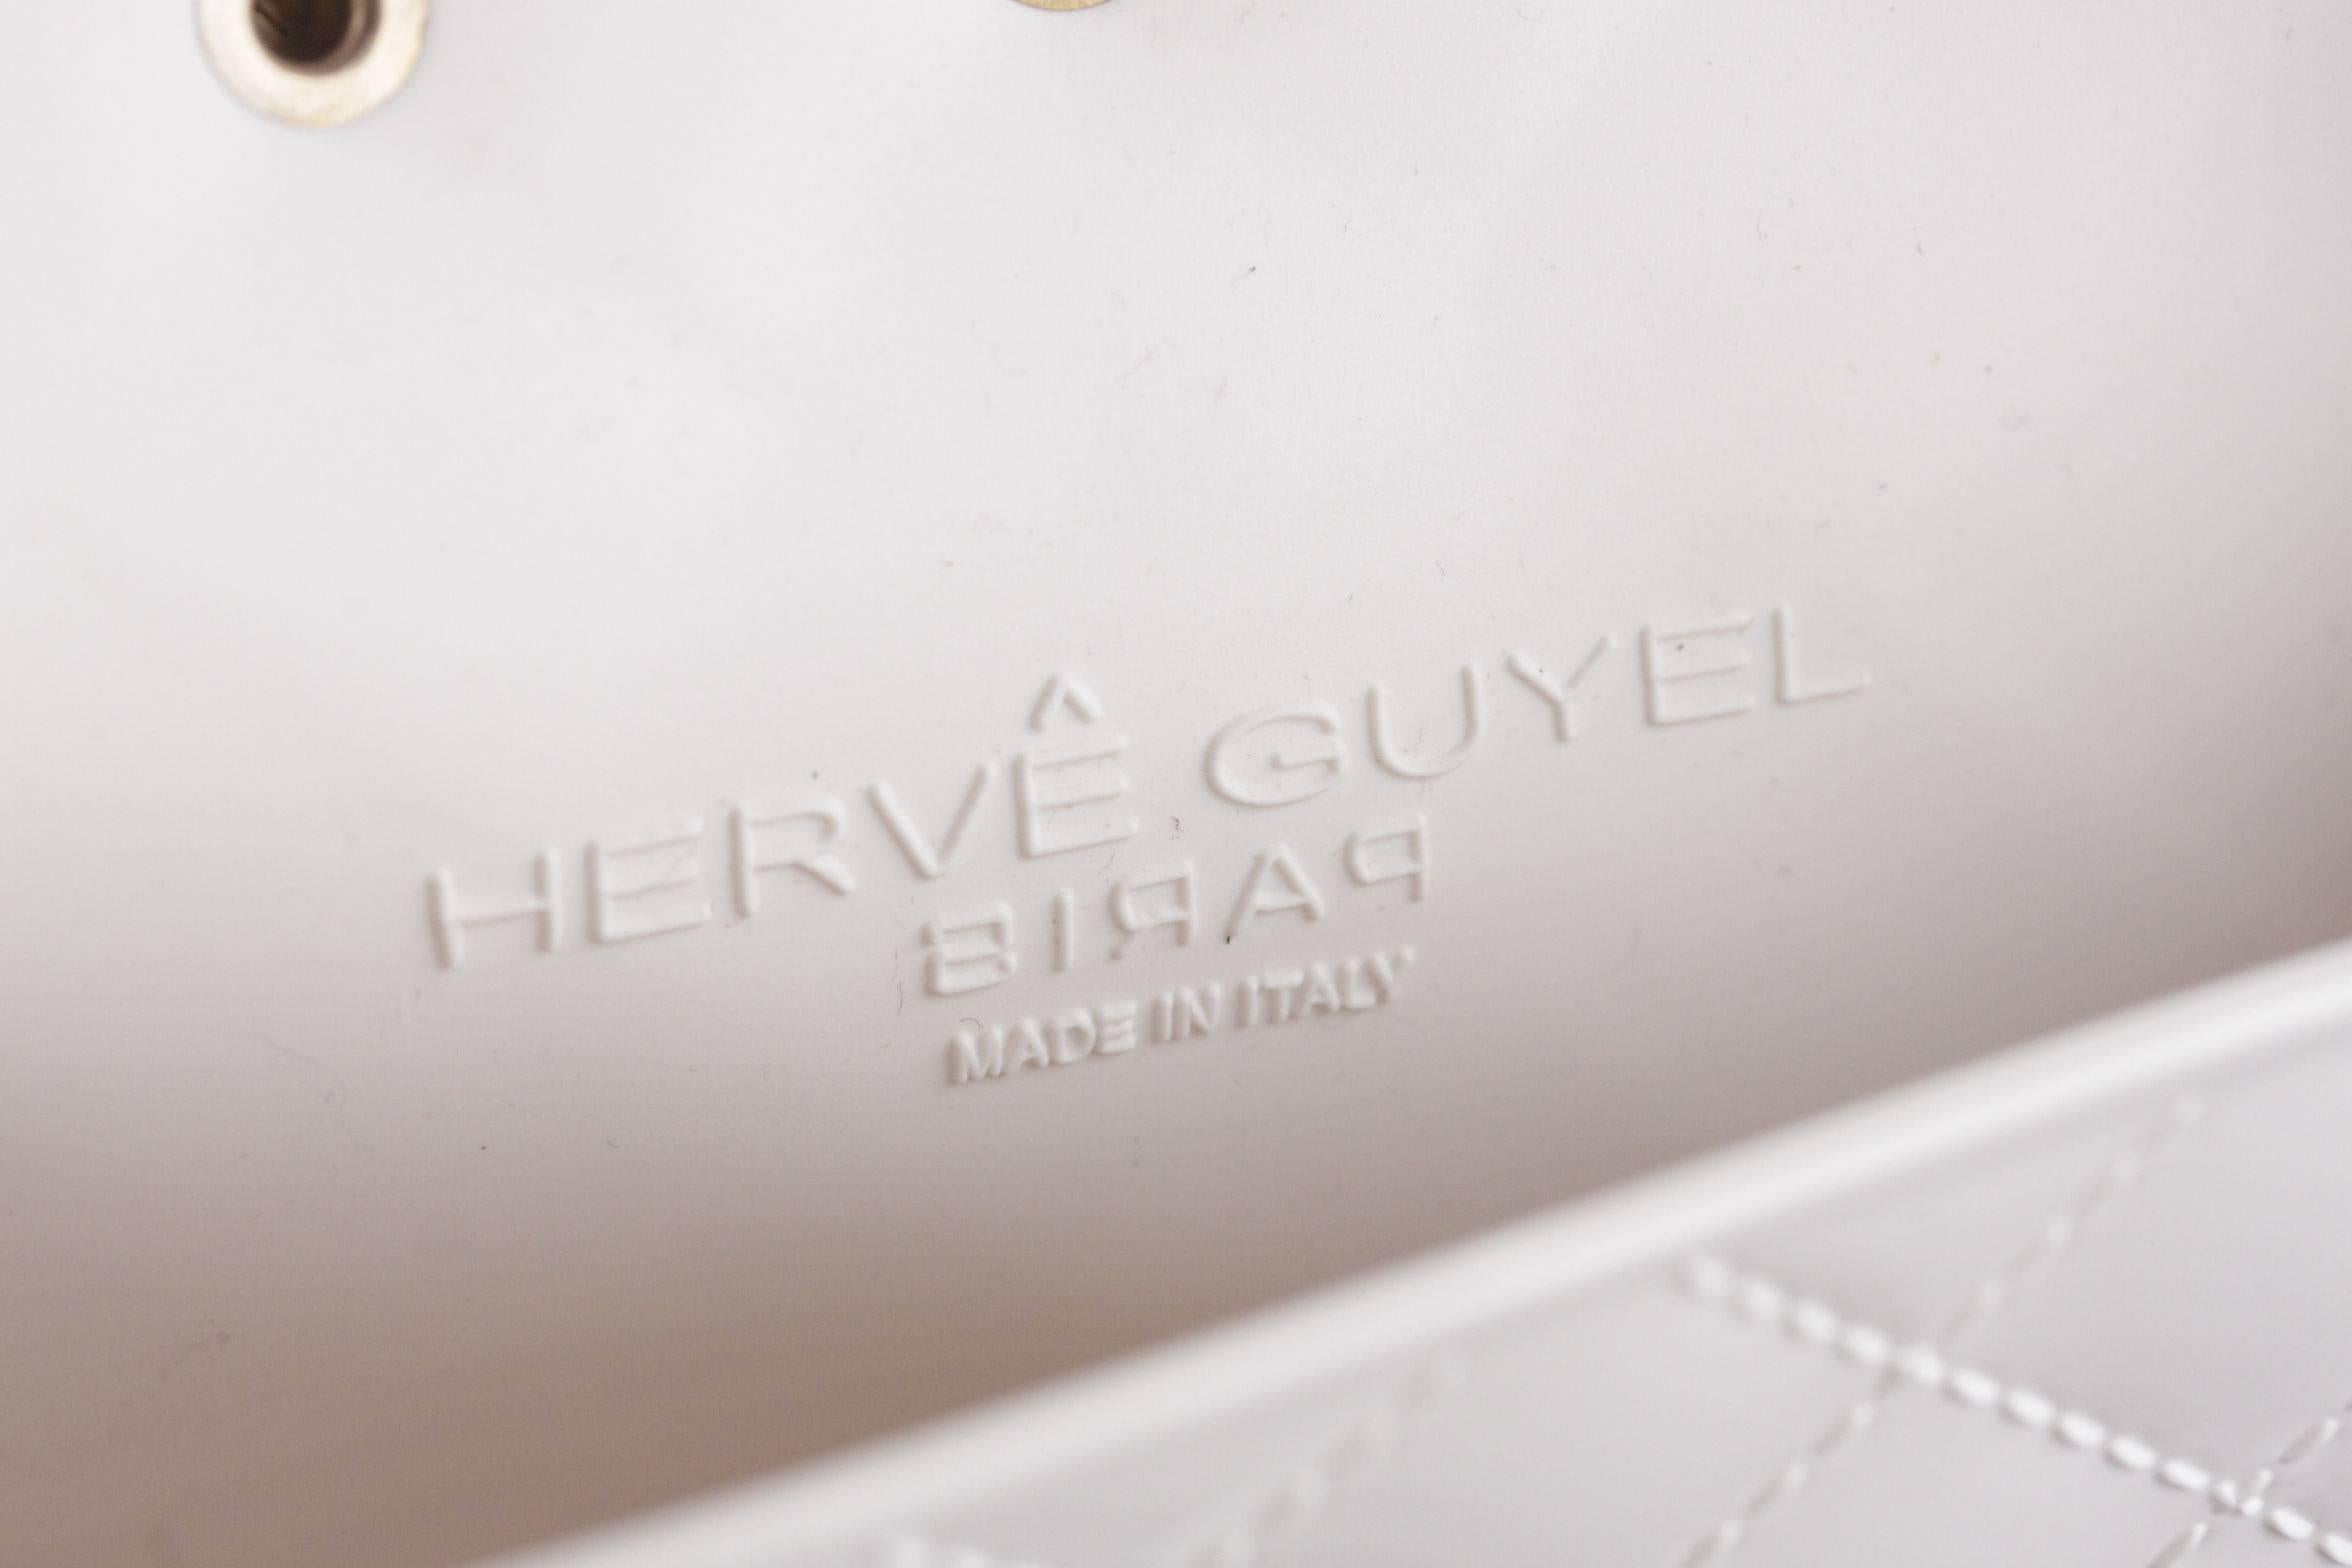 Beige HERVE GUYEL White Rubber SECRET BAG Studded MINI SHOULDER BAG w/ BOX